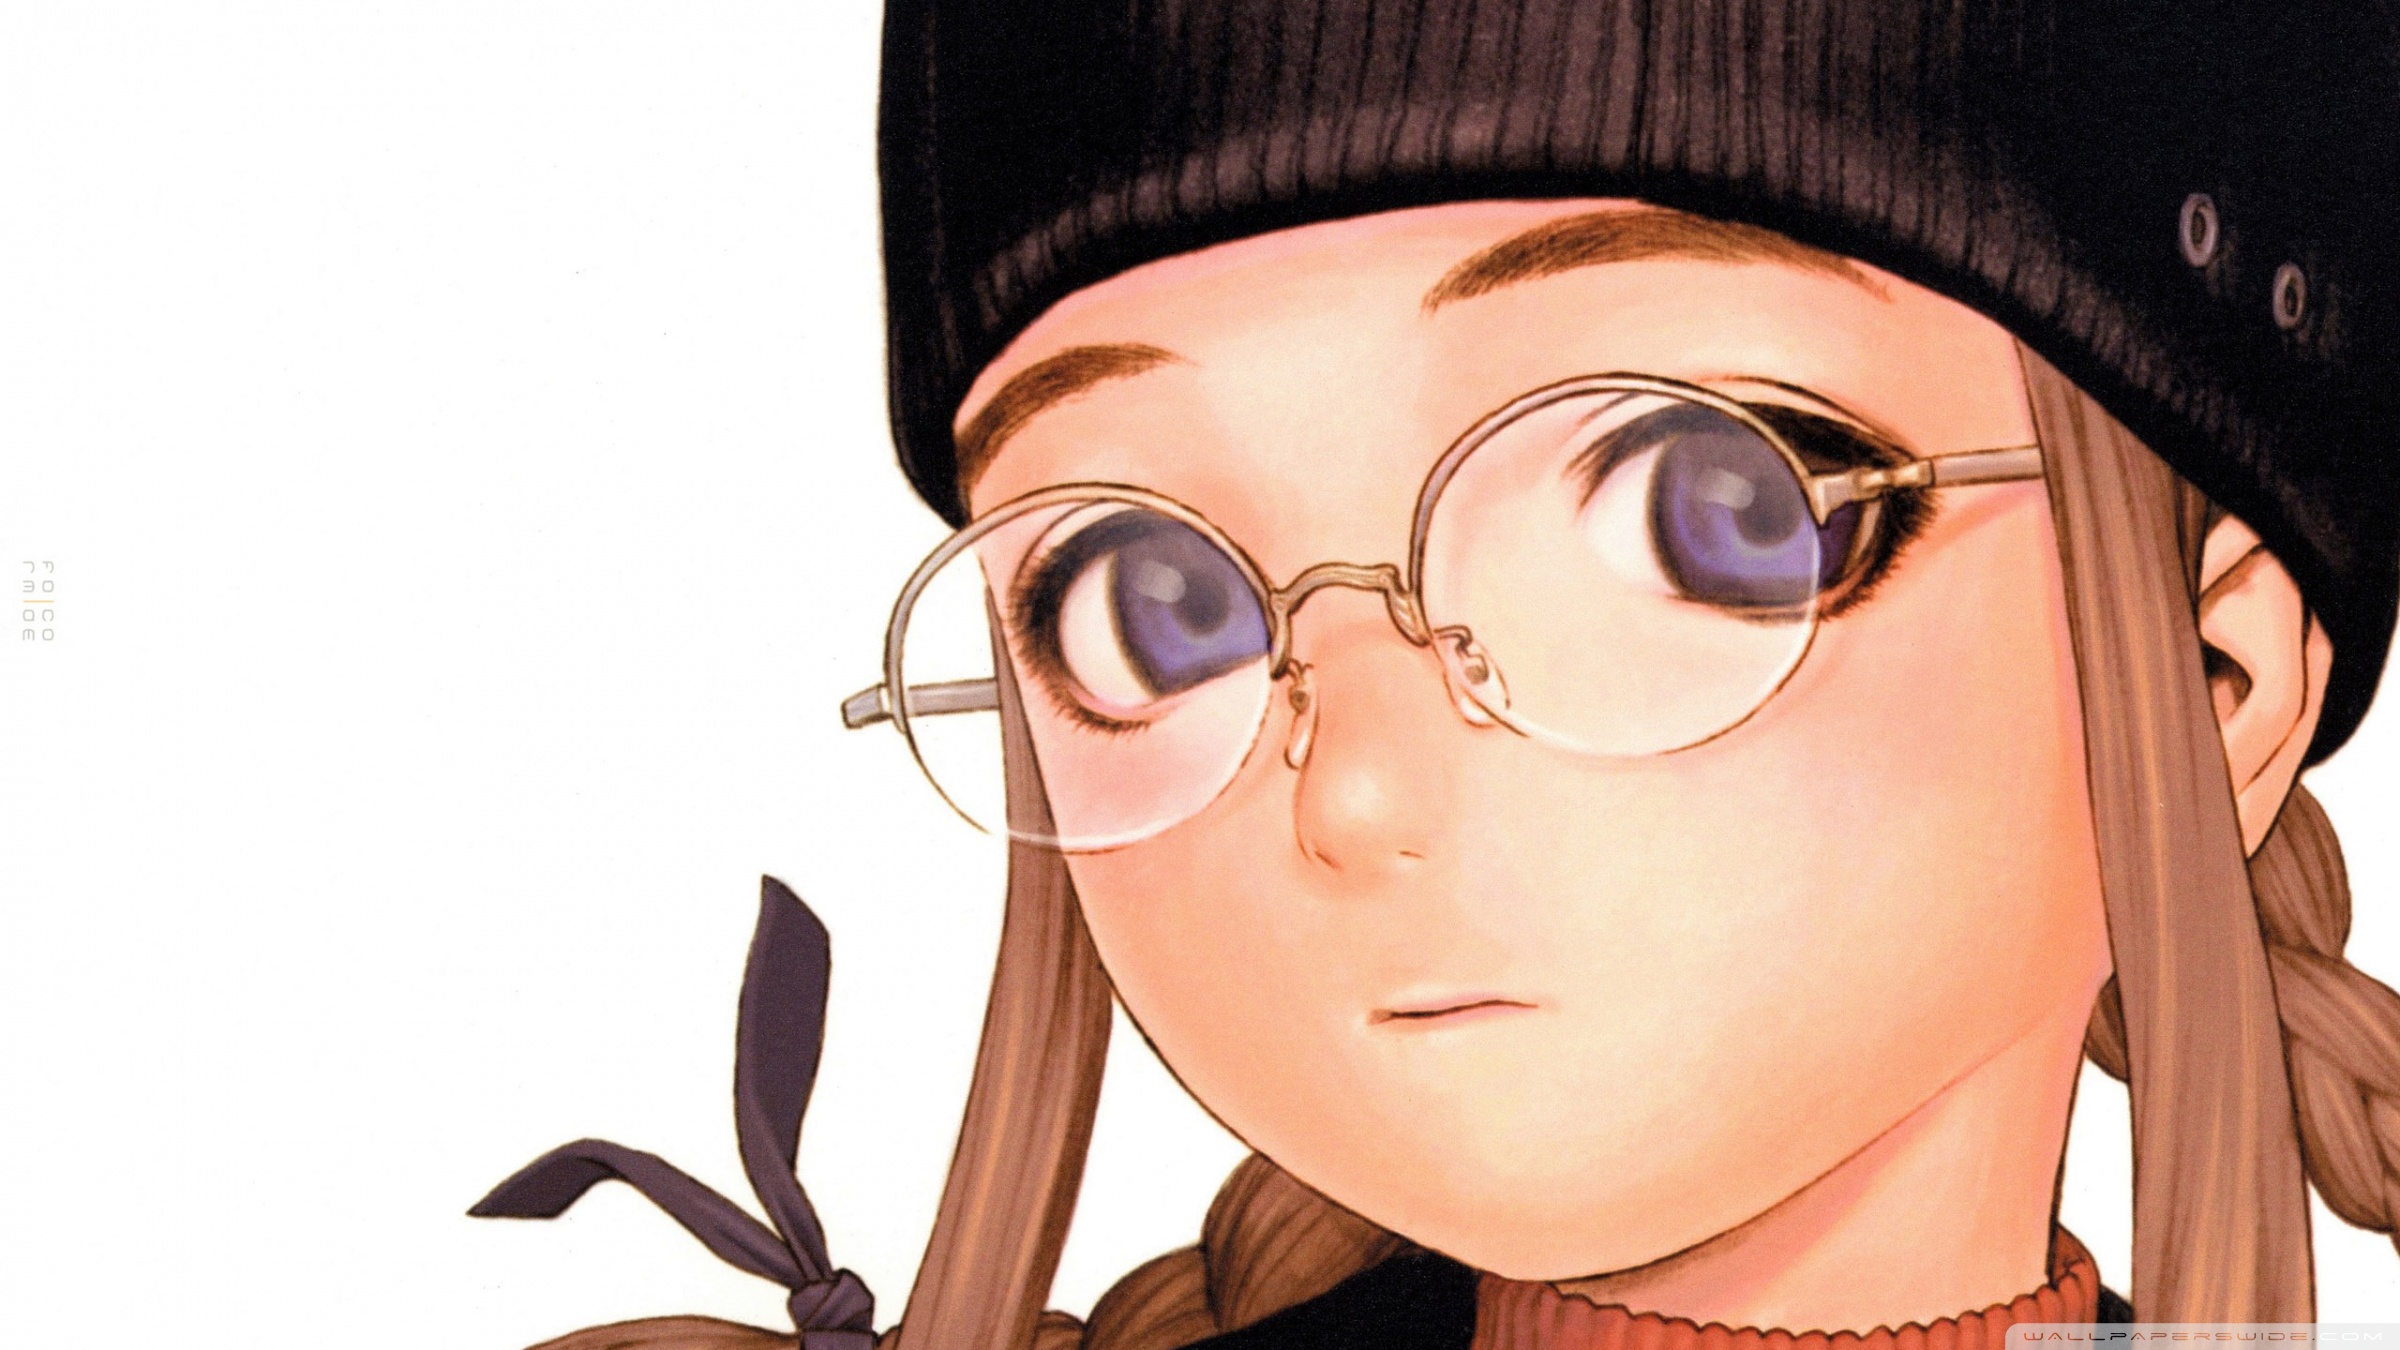 Anime Girl With Glasses Ultra HD Desktop Background Wallpaper for 4K UHD TV